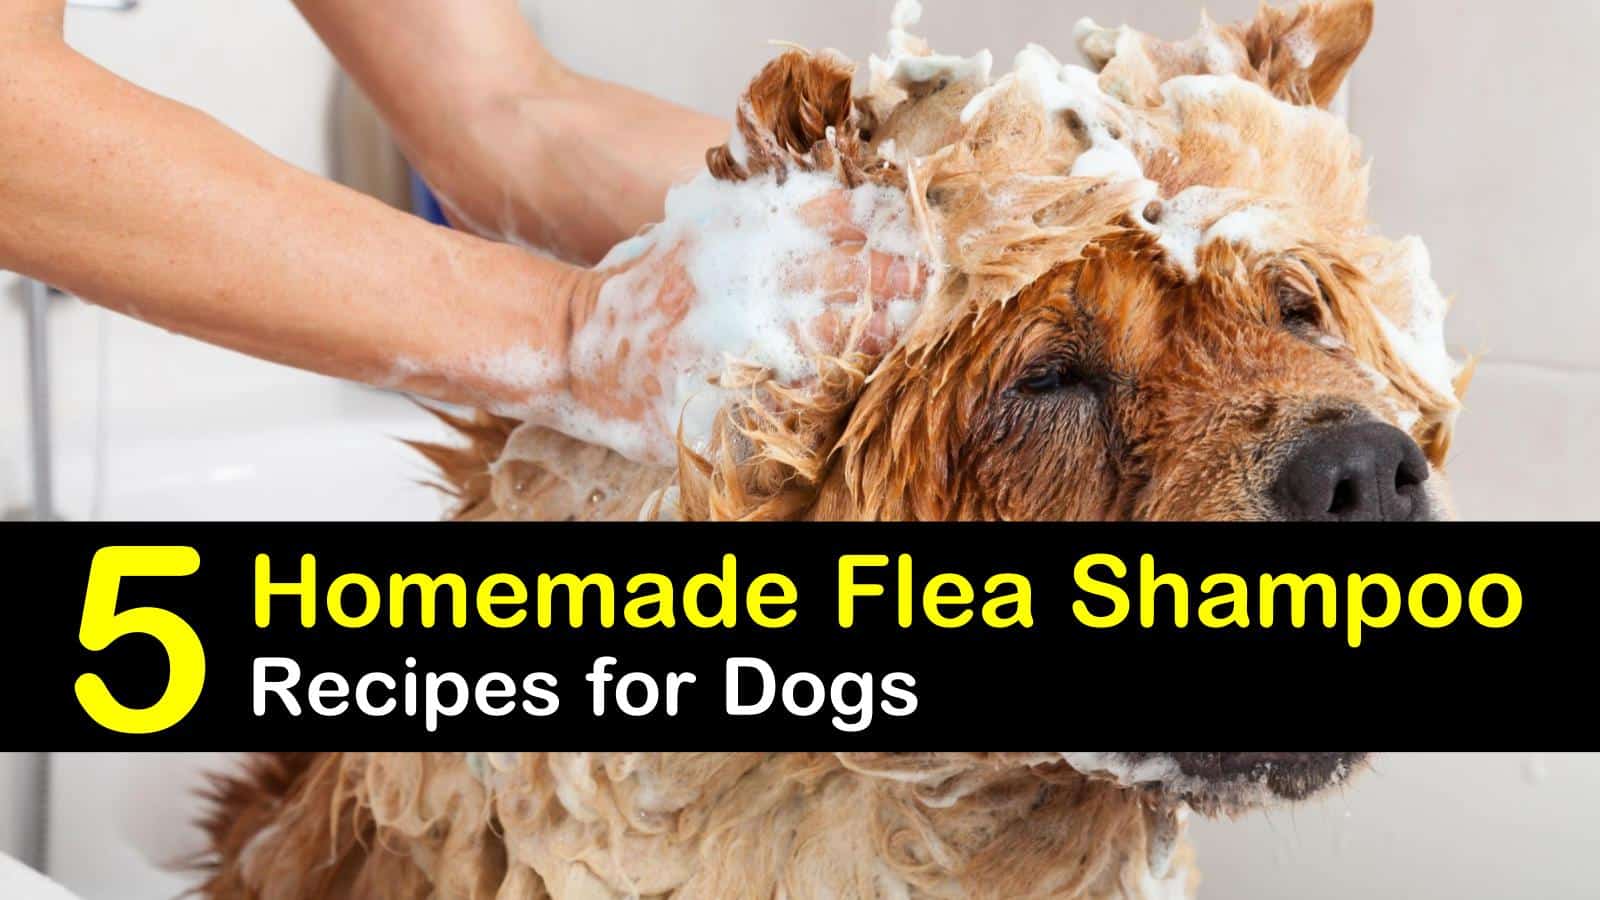 5 Amazing Homemade Flea Shampoo Recipes For Dogs